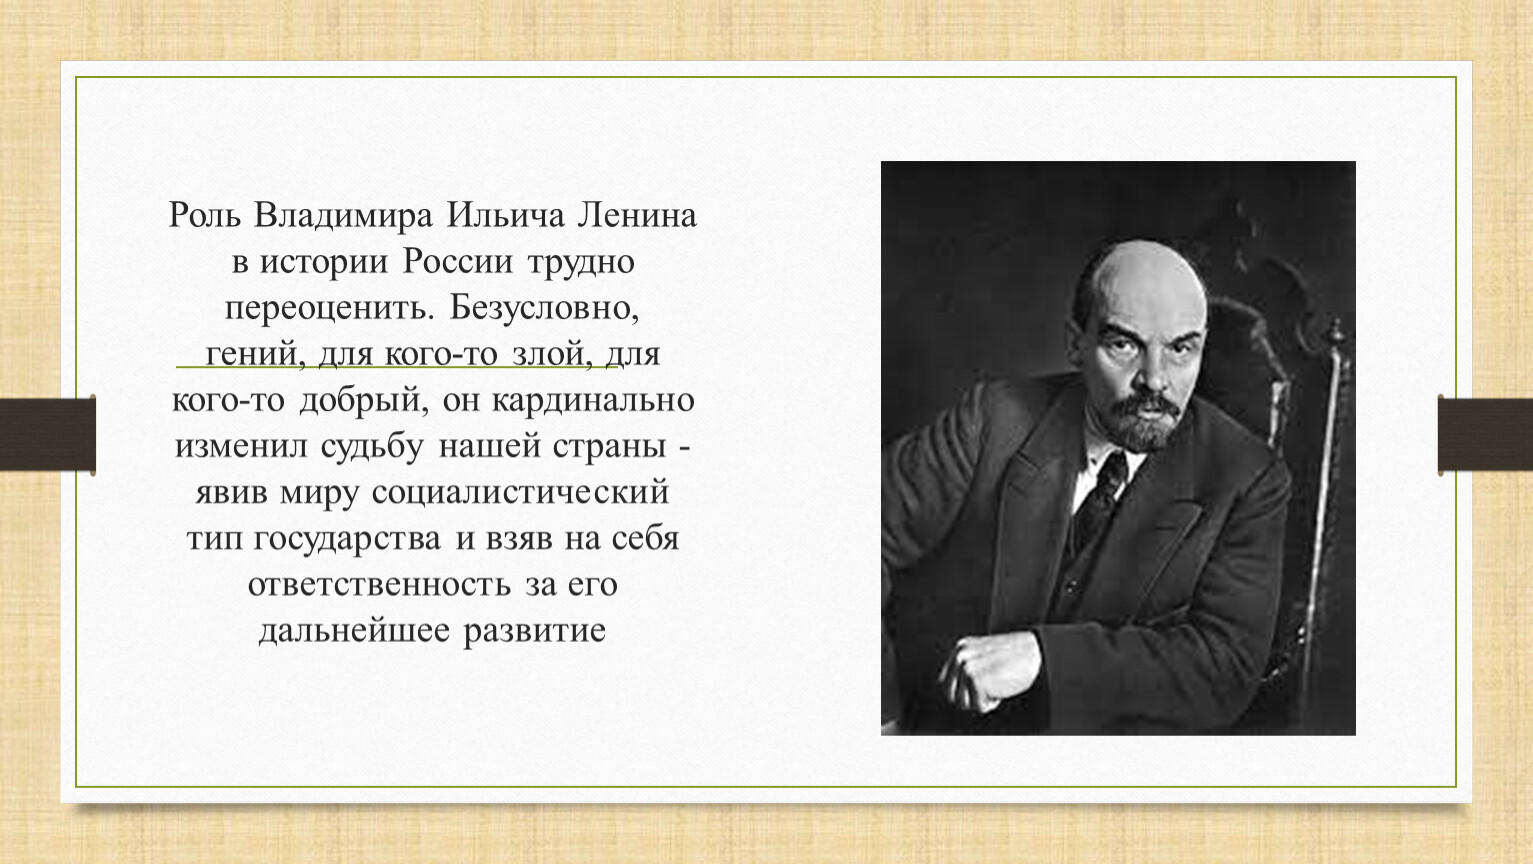 Роль Ленина в истории